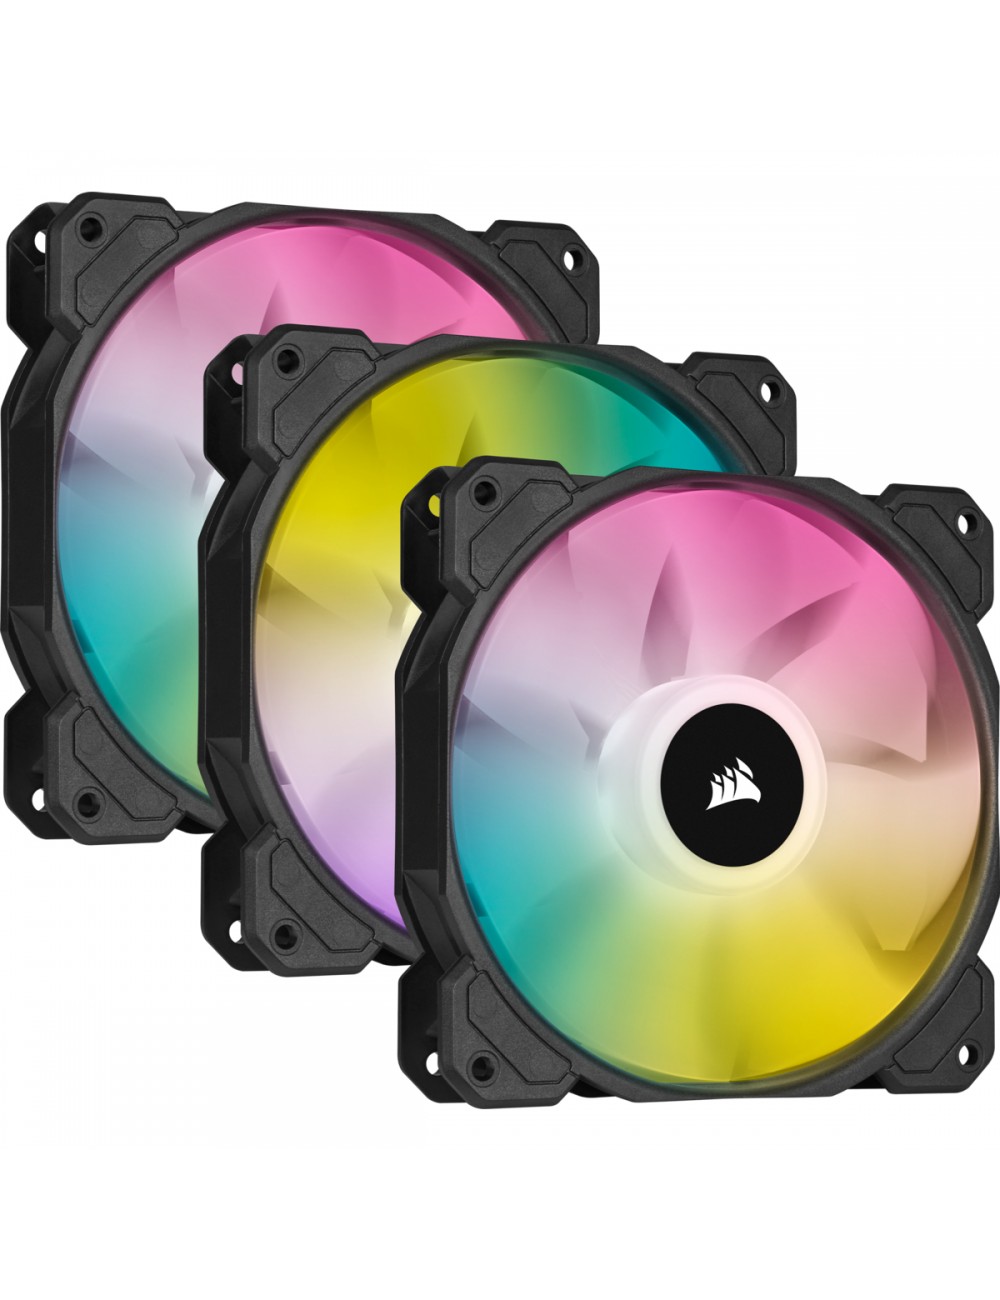 (CO-9050109-WW) PC- Triple ELITE Gehäuselüfter SP120 Kit RGB Fan Corsair